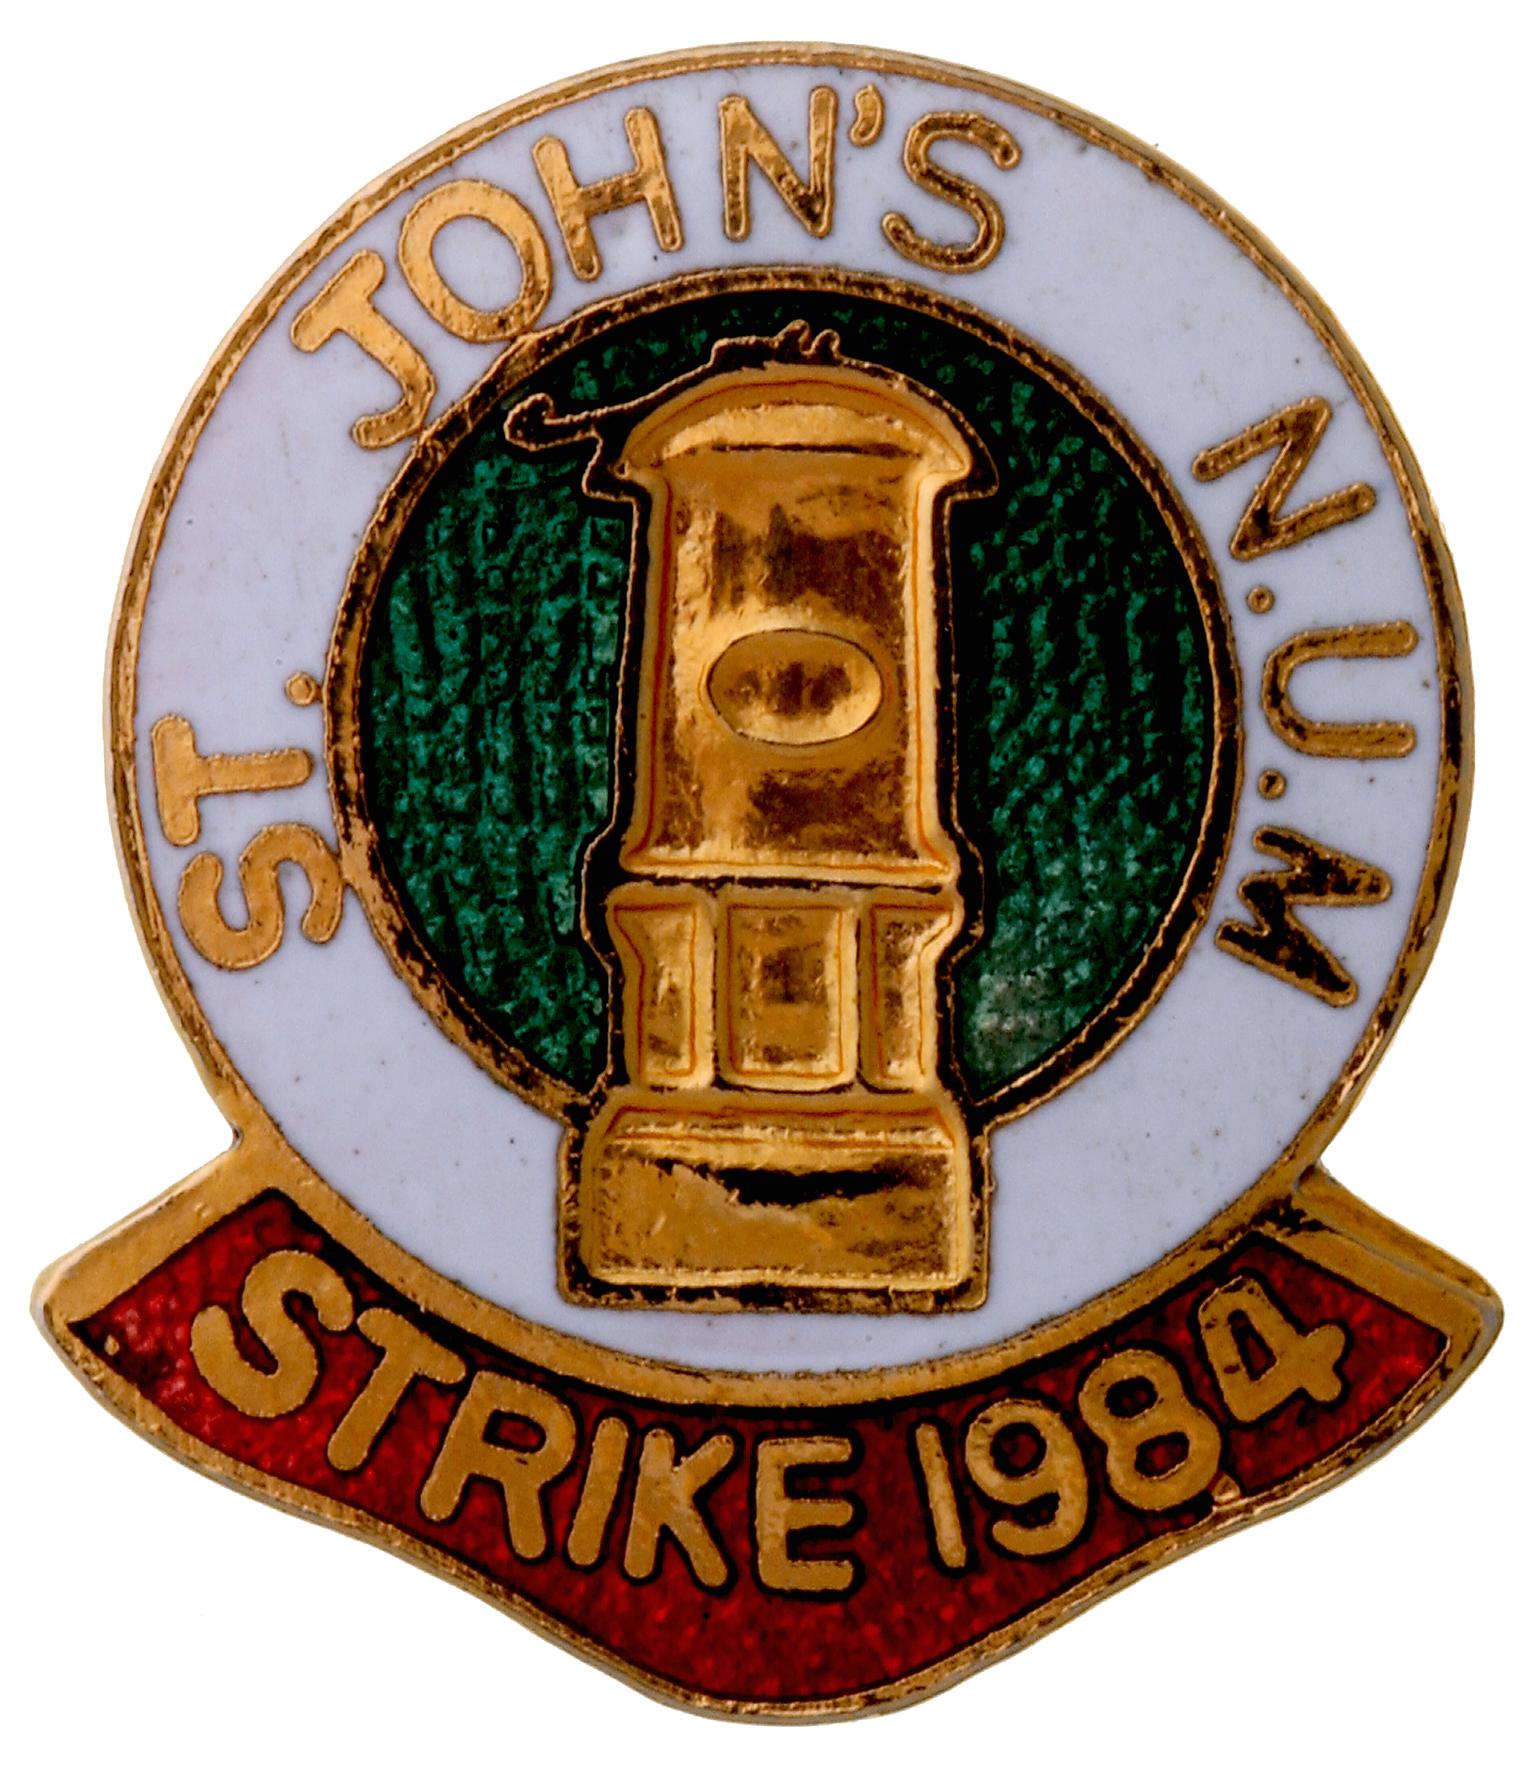 N.U.M. St. John's, badge